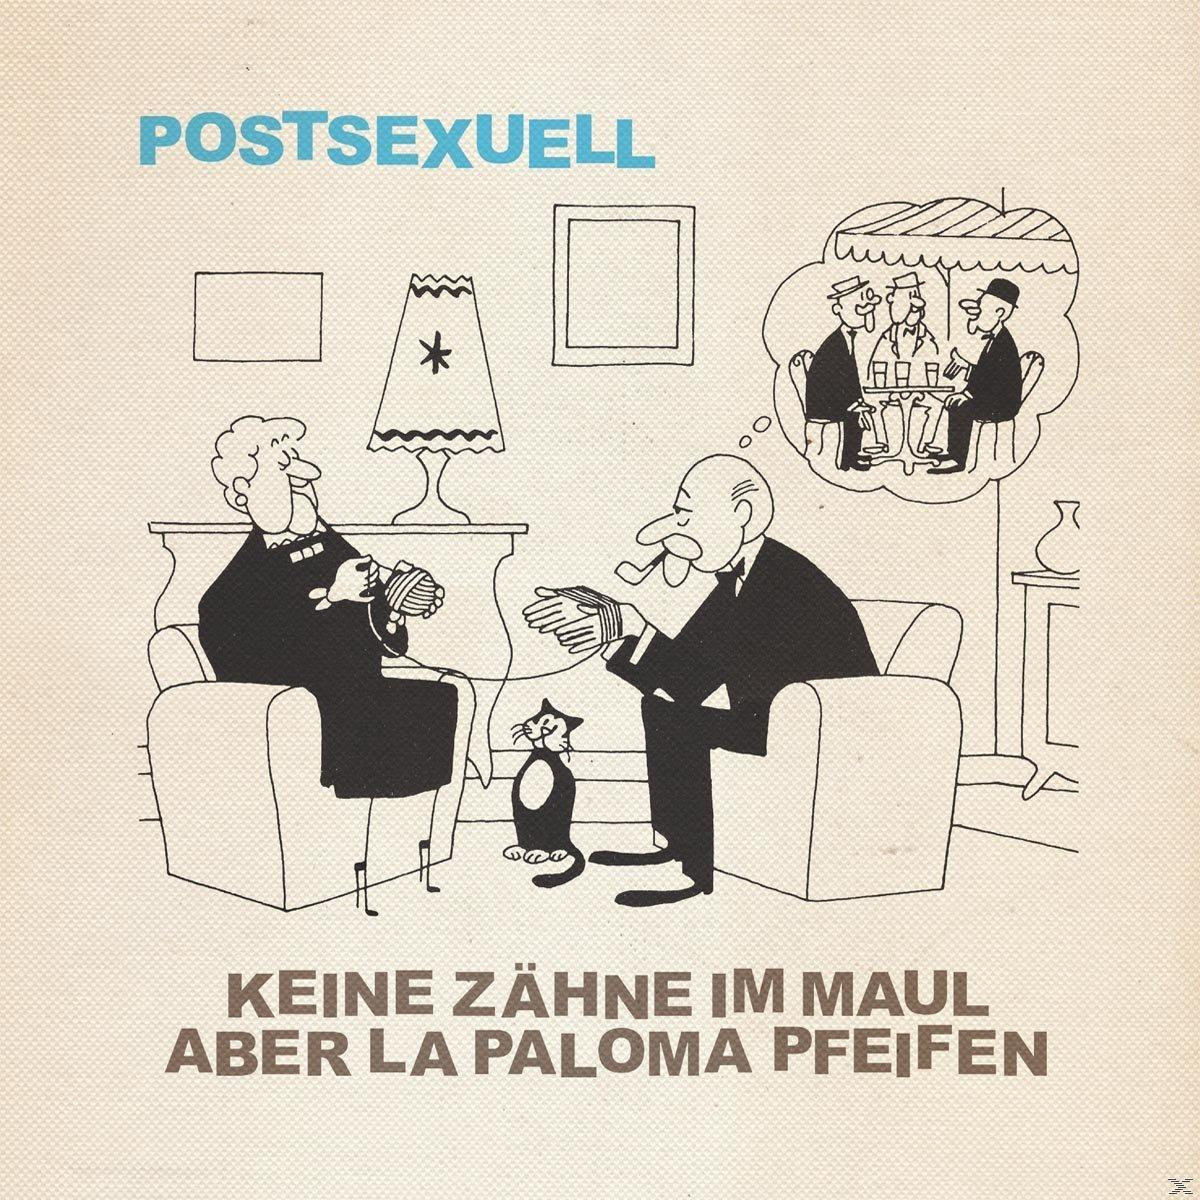 Postsexuell - Maul Keine Aber La Pfeifen - Im (Vinyl) Paloma Zähne